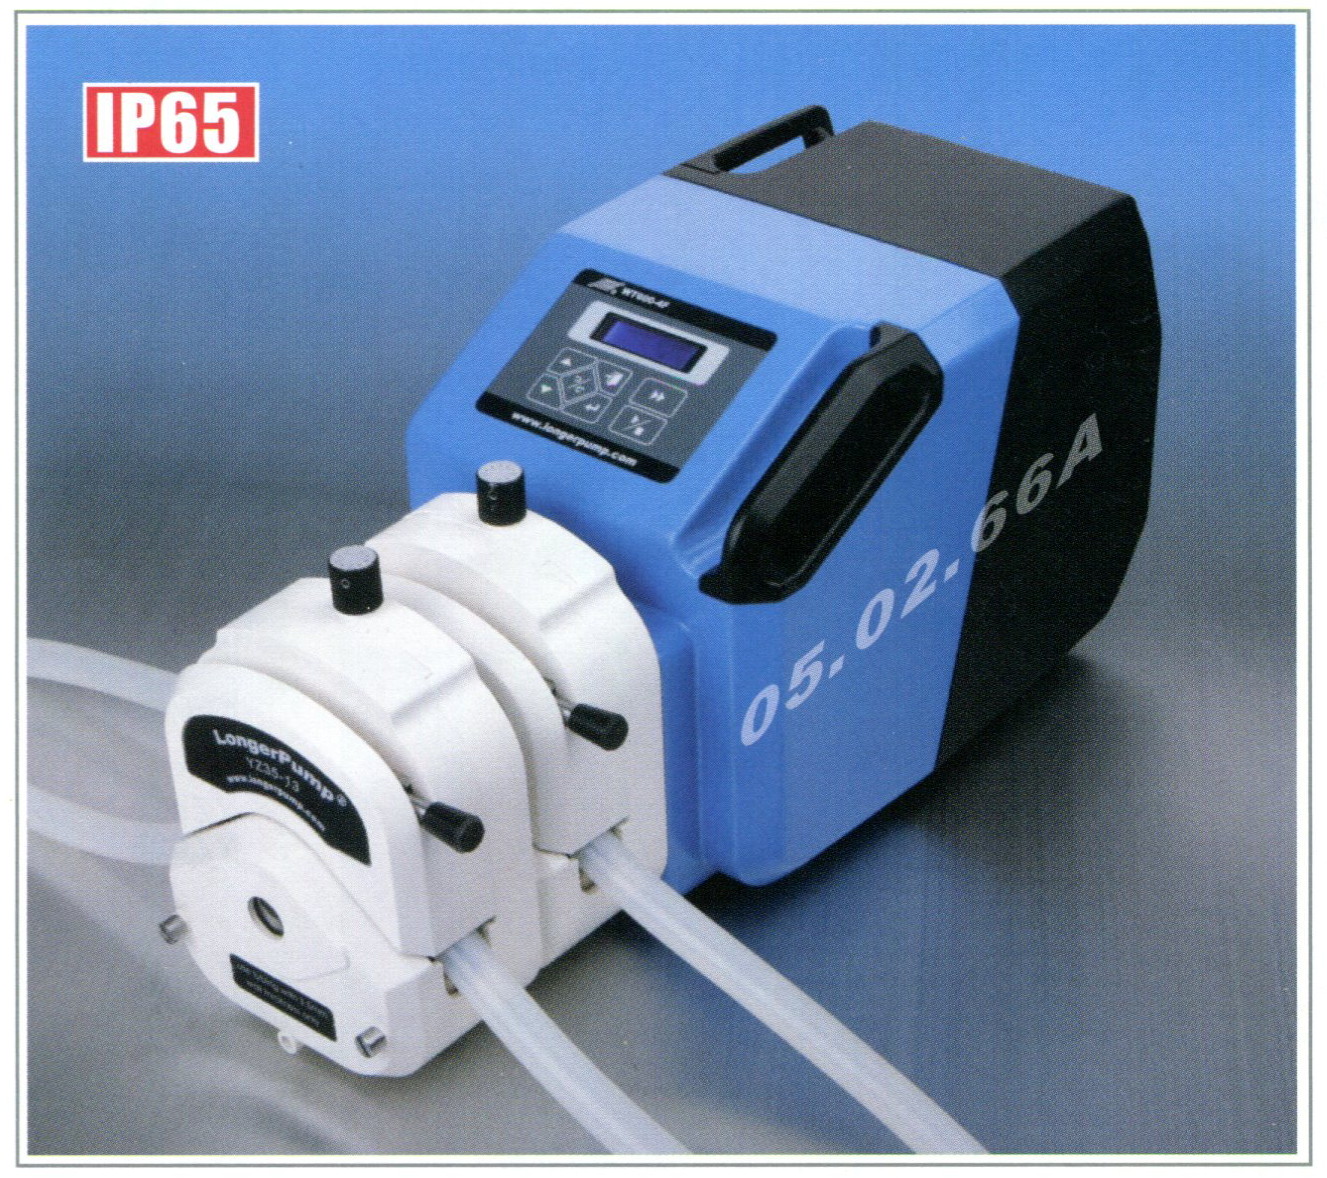 Longer pump, Peristaltic pump, WT600-4F